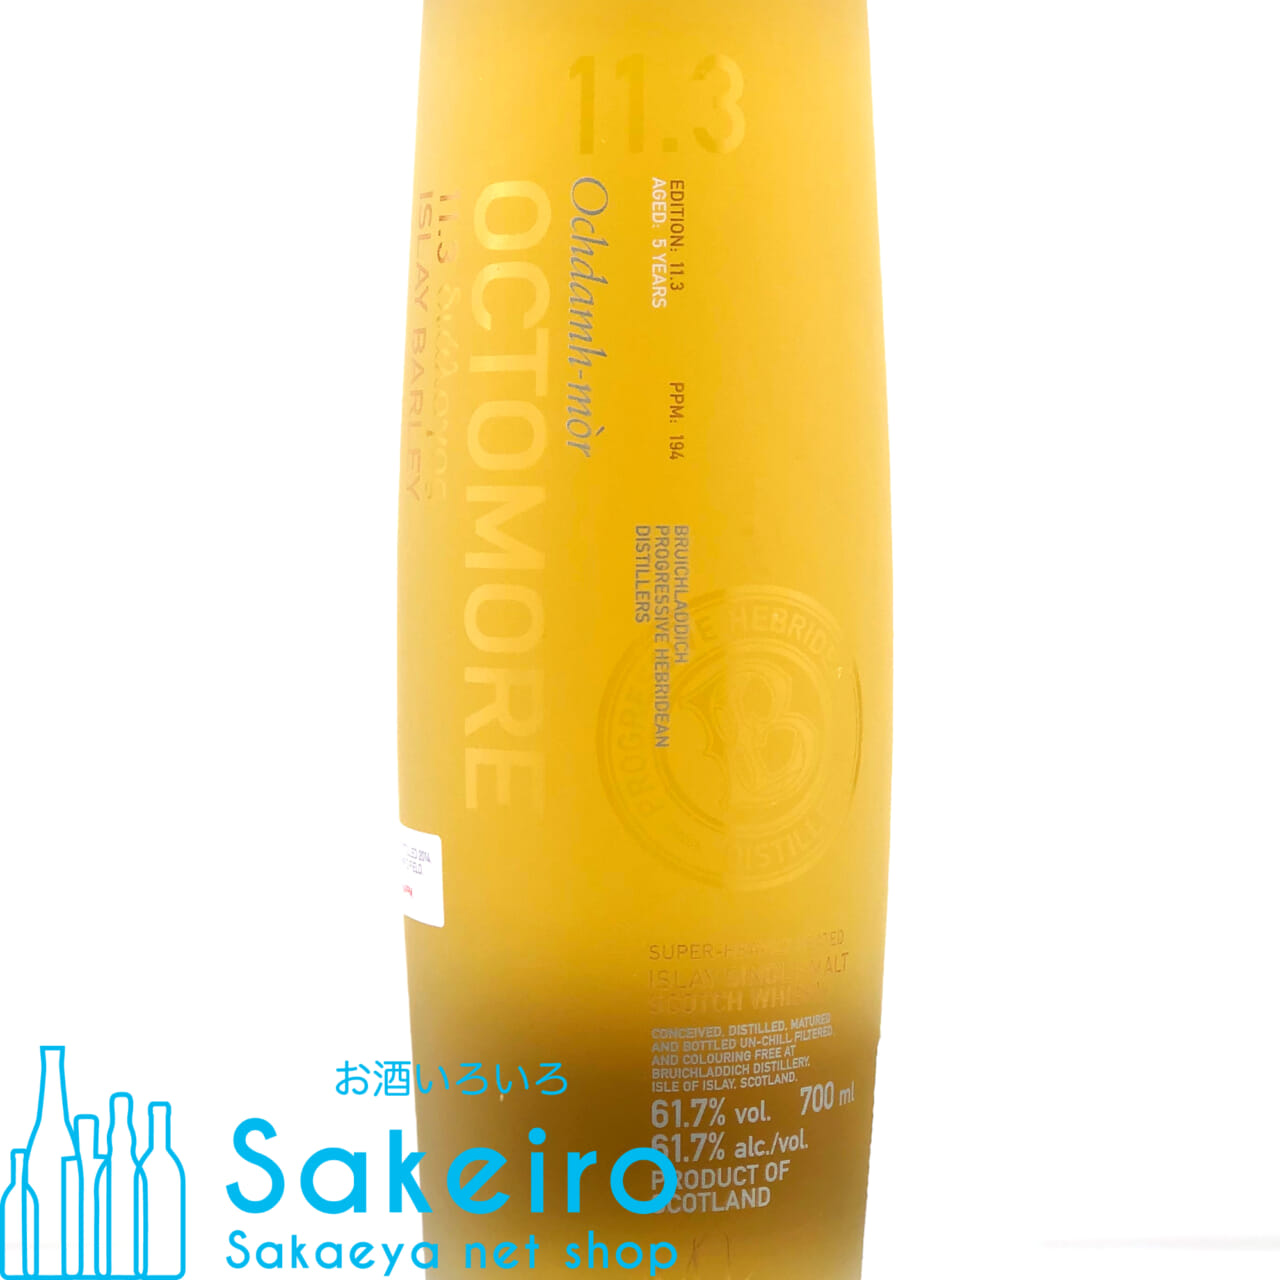 オクトモア 11.3 アイラバーレイ 61.7％ 700ml - お酒いろいろ Sakeiro